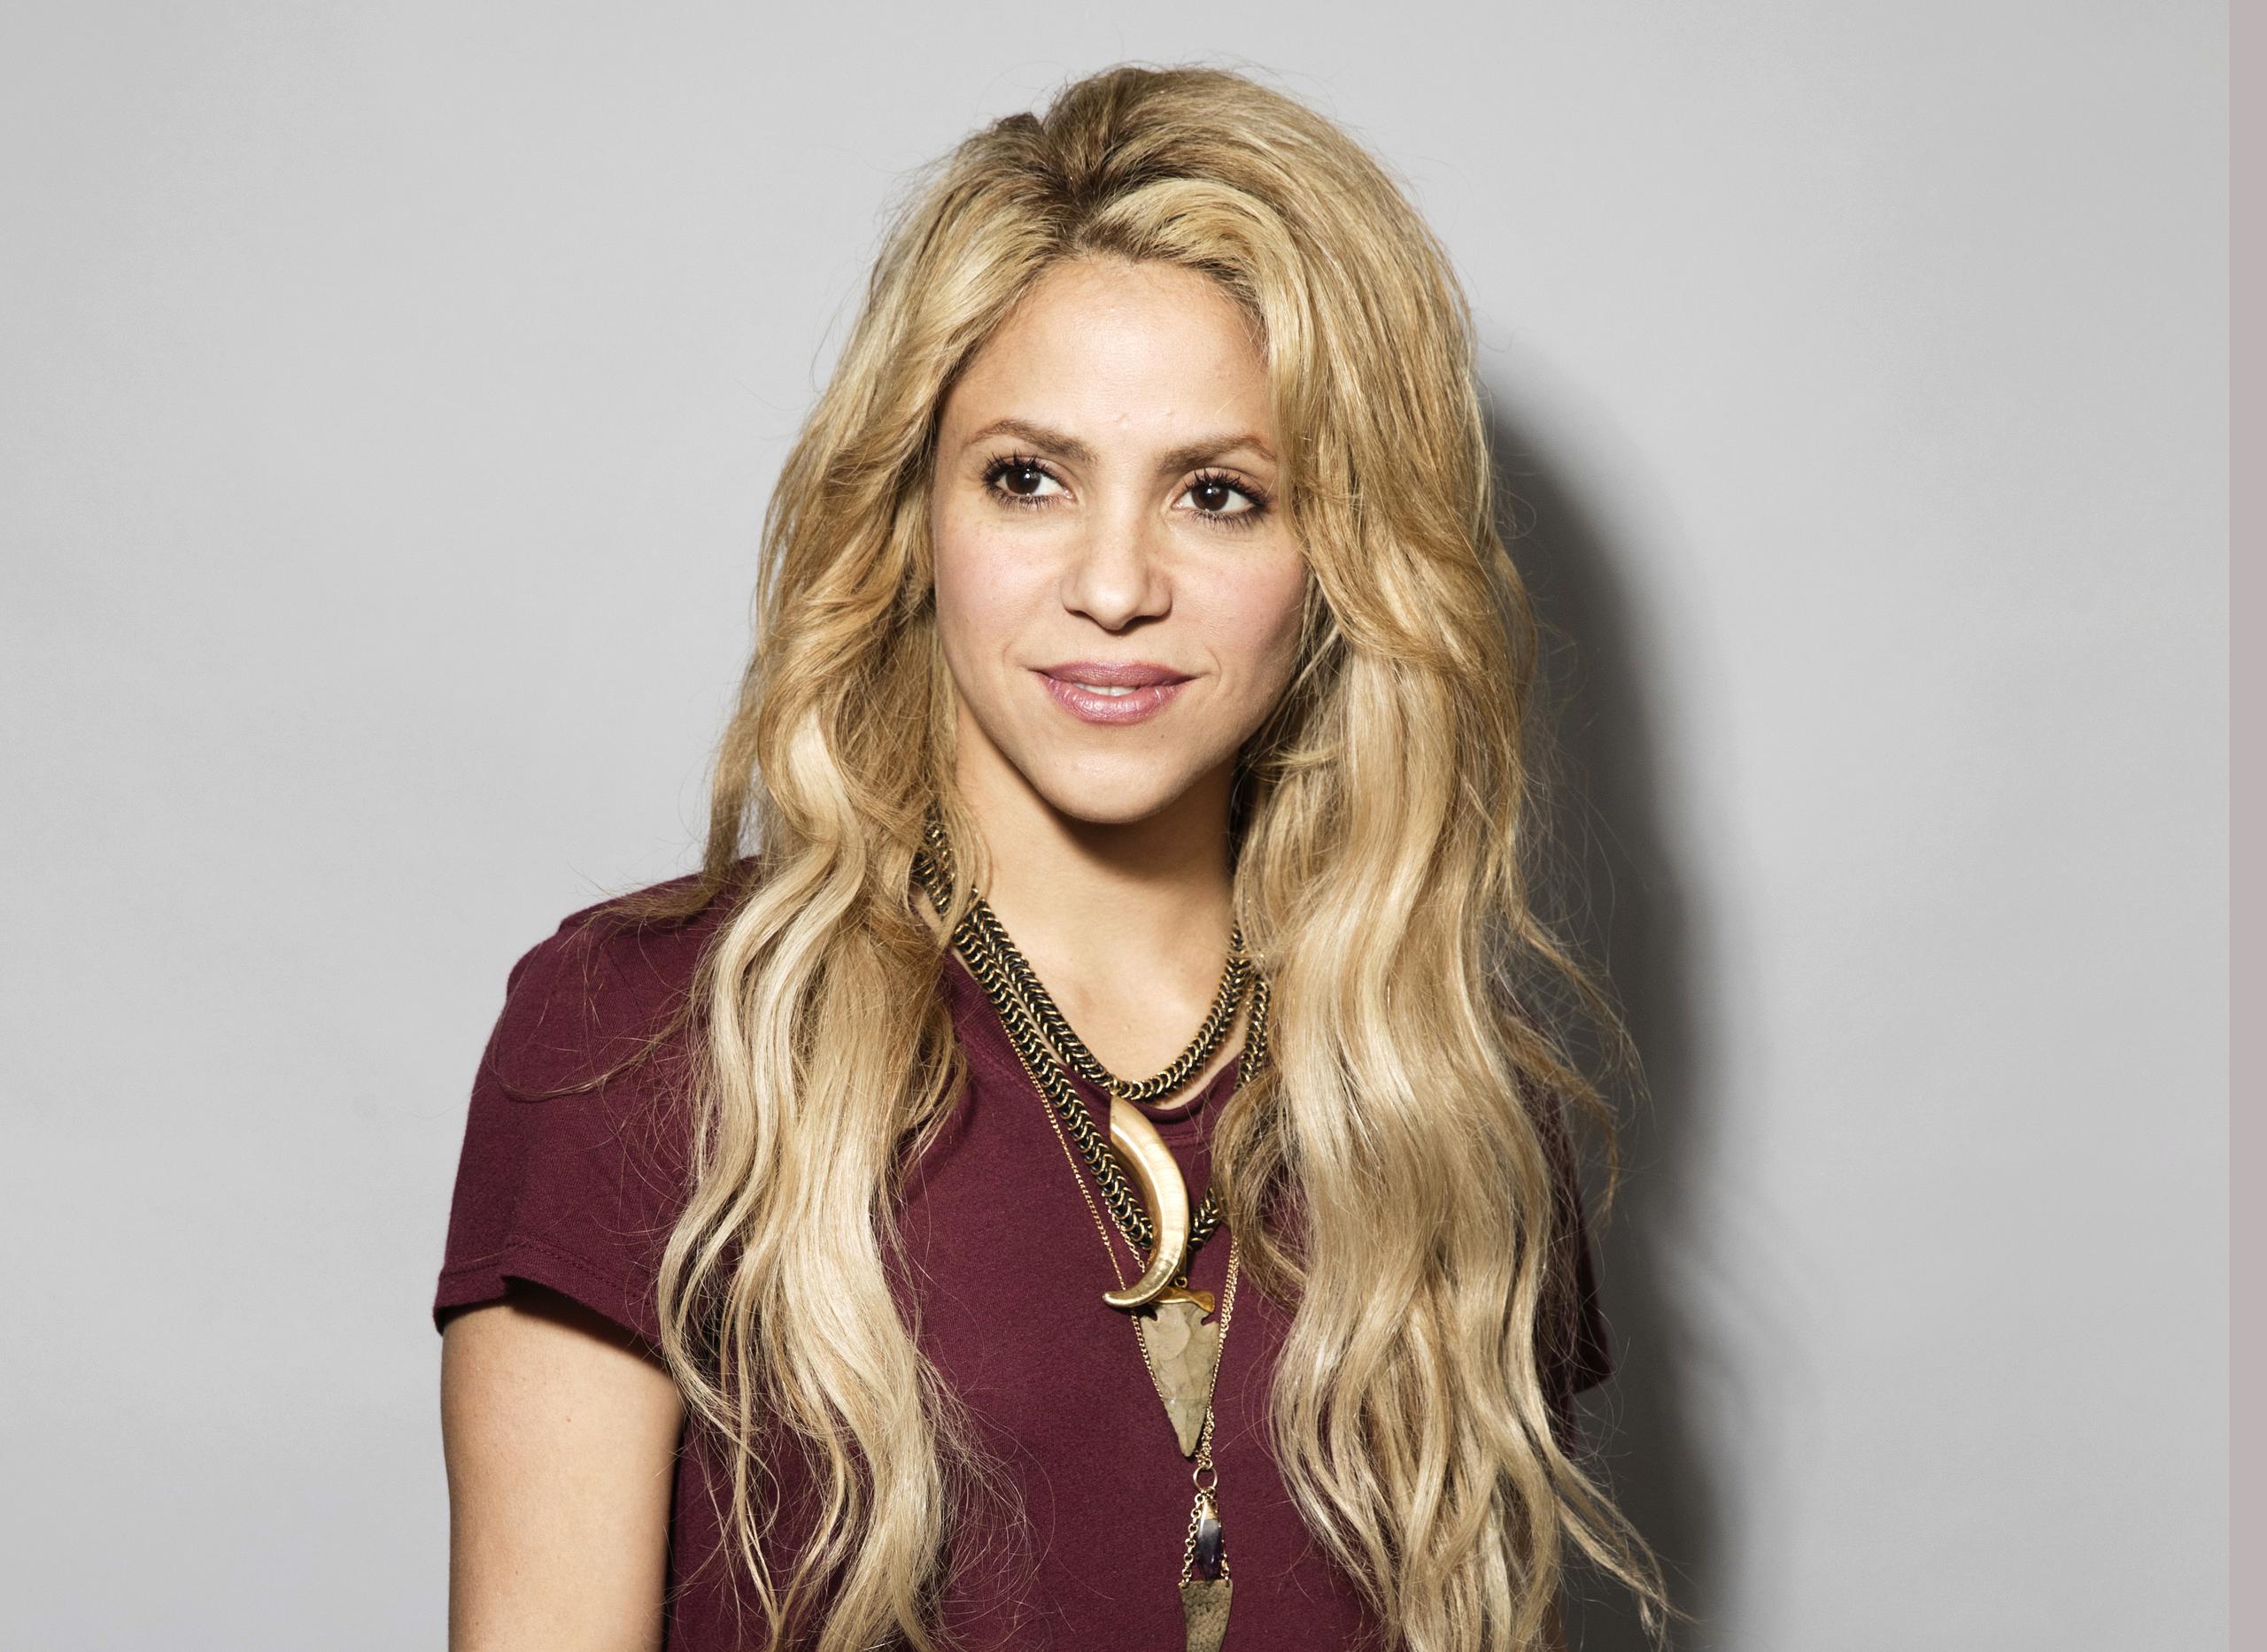 Shakira no ha dado ninguna declaración al respecto sobre la condición de William Mebarak.